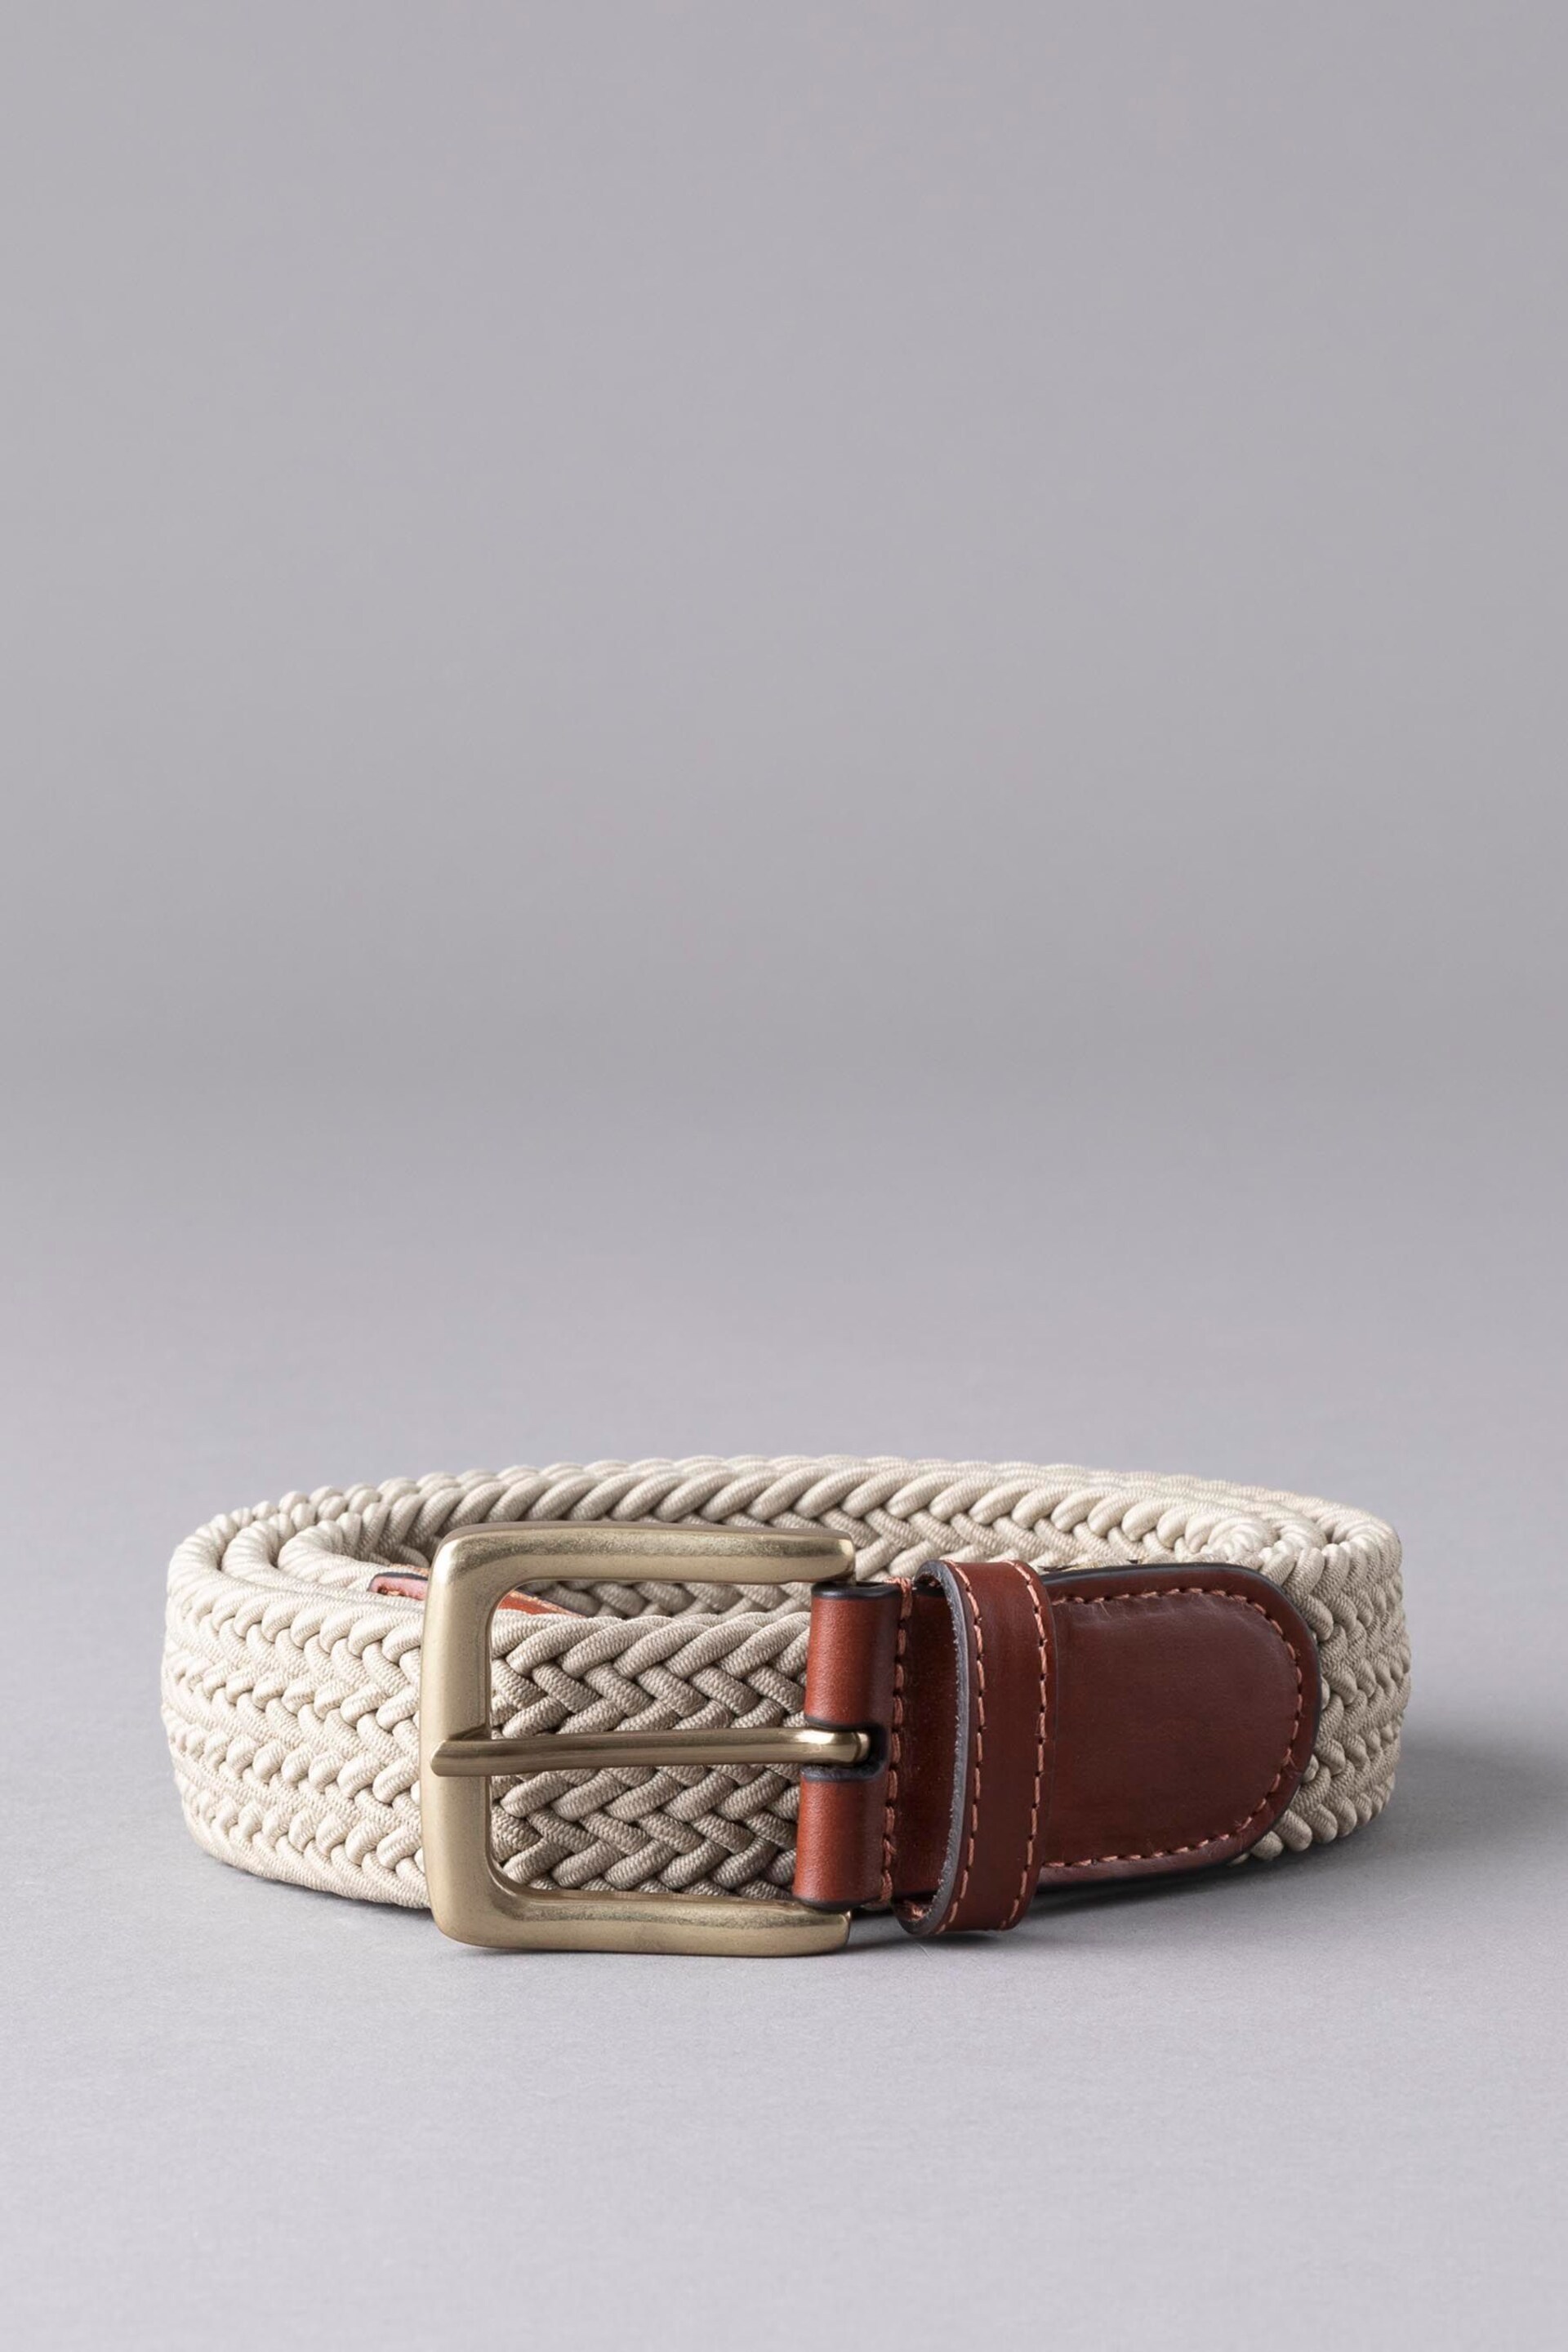 Lakeland Leather Greythwaite Braided Belt - Image 1 of 3